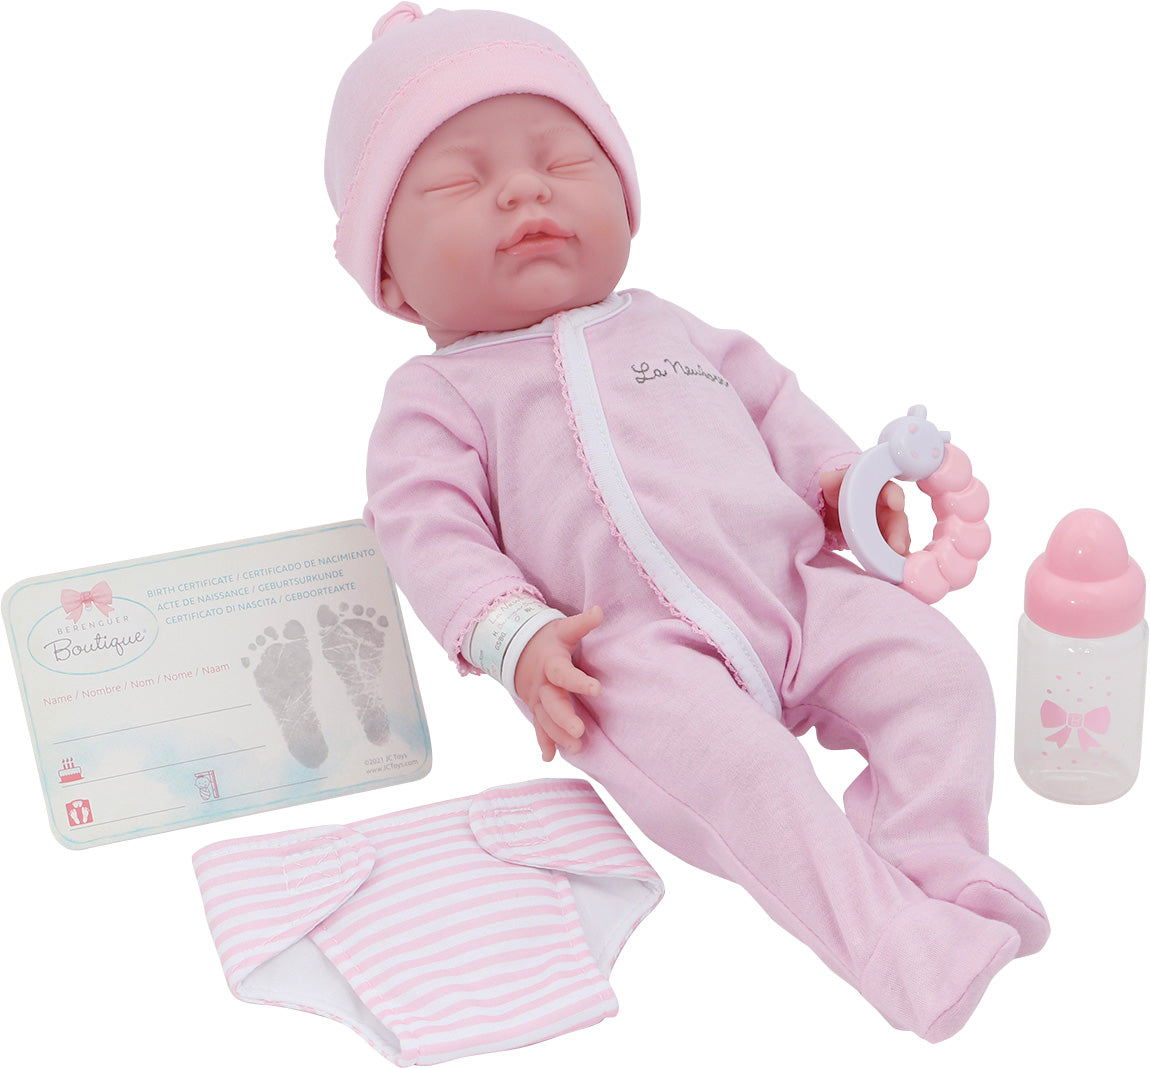 La Newborn® 17"  All-Vinyl Retro La Newborn Doll (closed Eyes) in Pink Set w/ accessories. Real Girl! Window Box